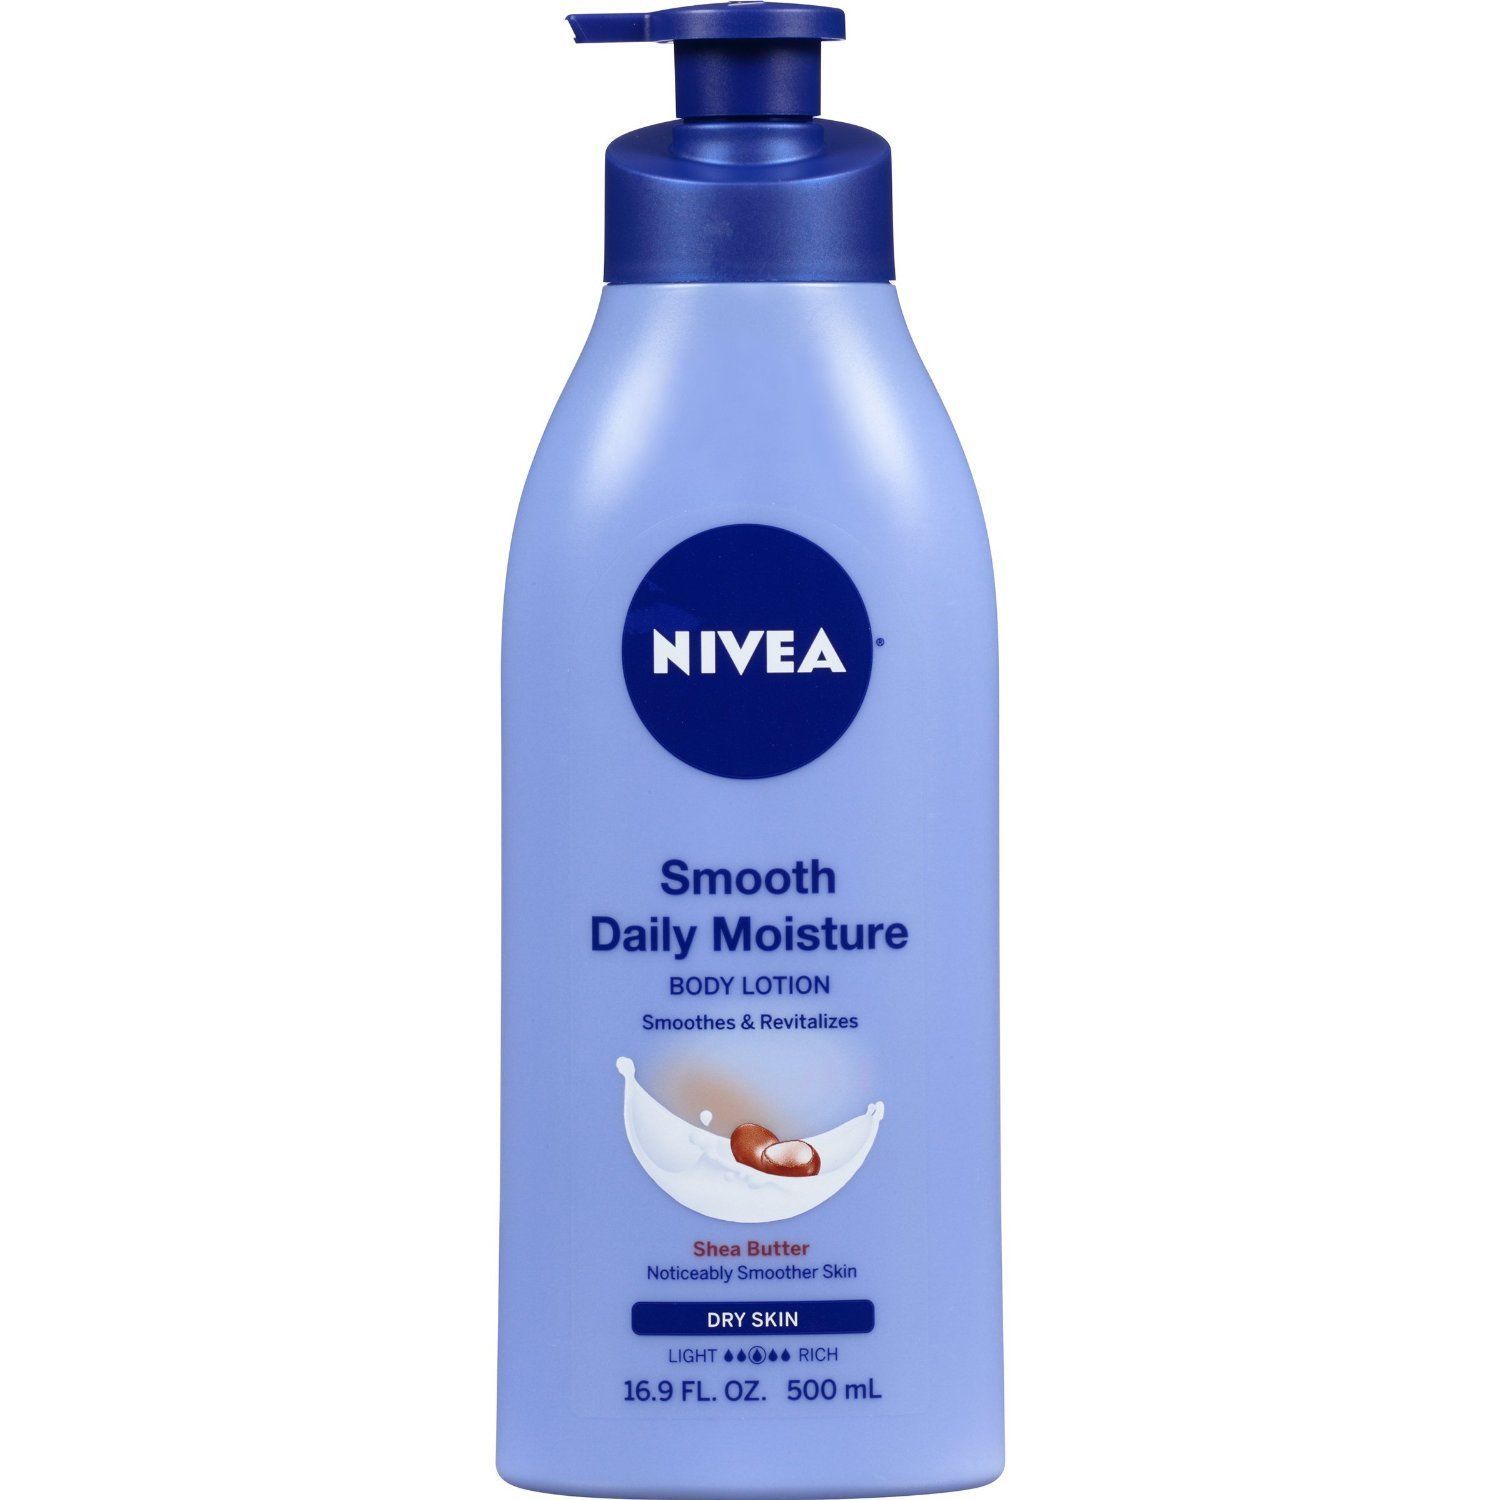 NIVEA Smooth Daily Moisture Body Lotion 16.9 Fluid Ounce - $7.84